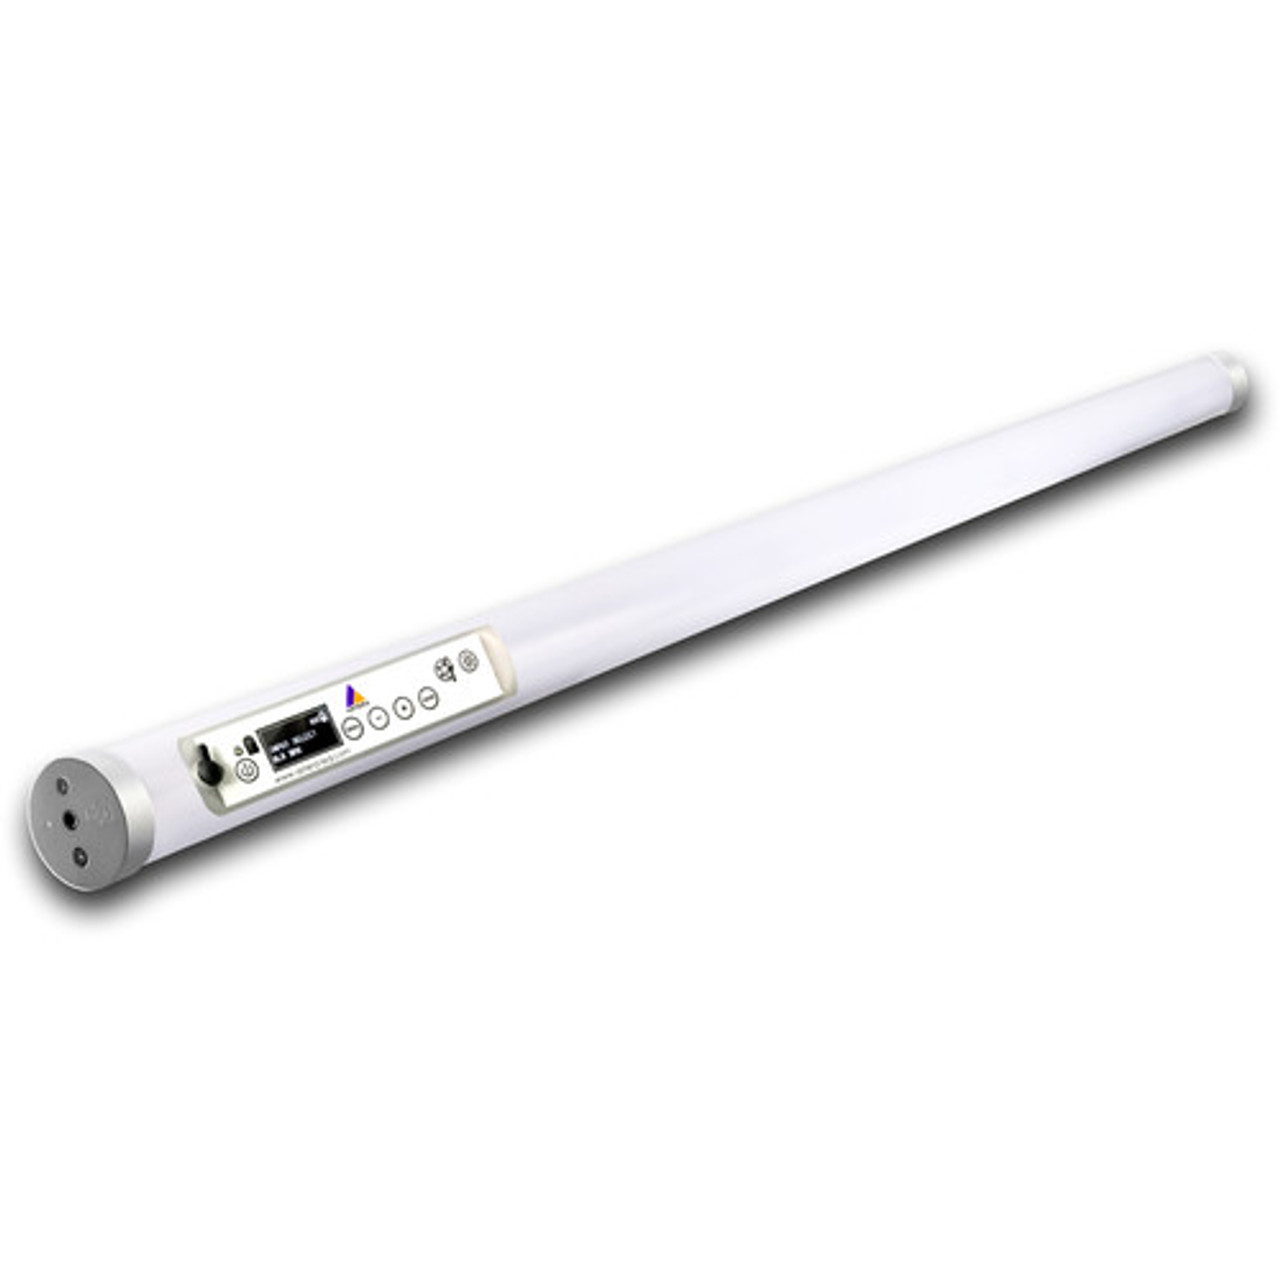 Astera FP1-QUAD SET *KIT* Titan Tube RGB LED Tube Light (3.4', 4-Light Kit) (Titan Tube RGB LED Tube Light (3.4', 4-Light Kit))